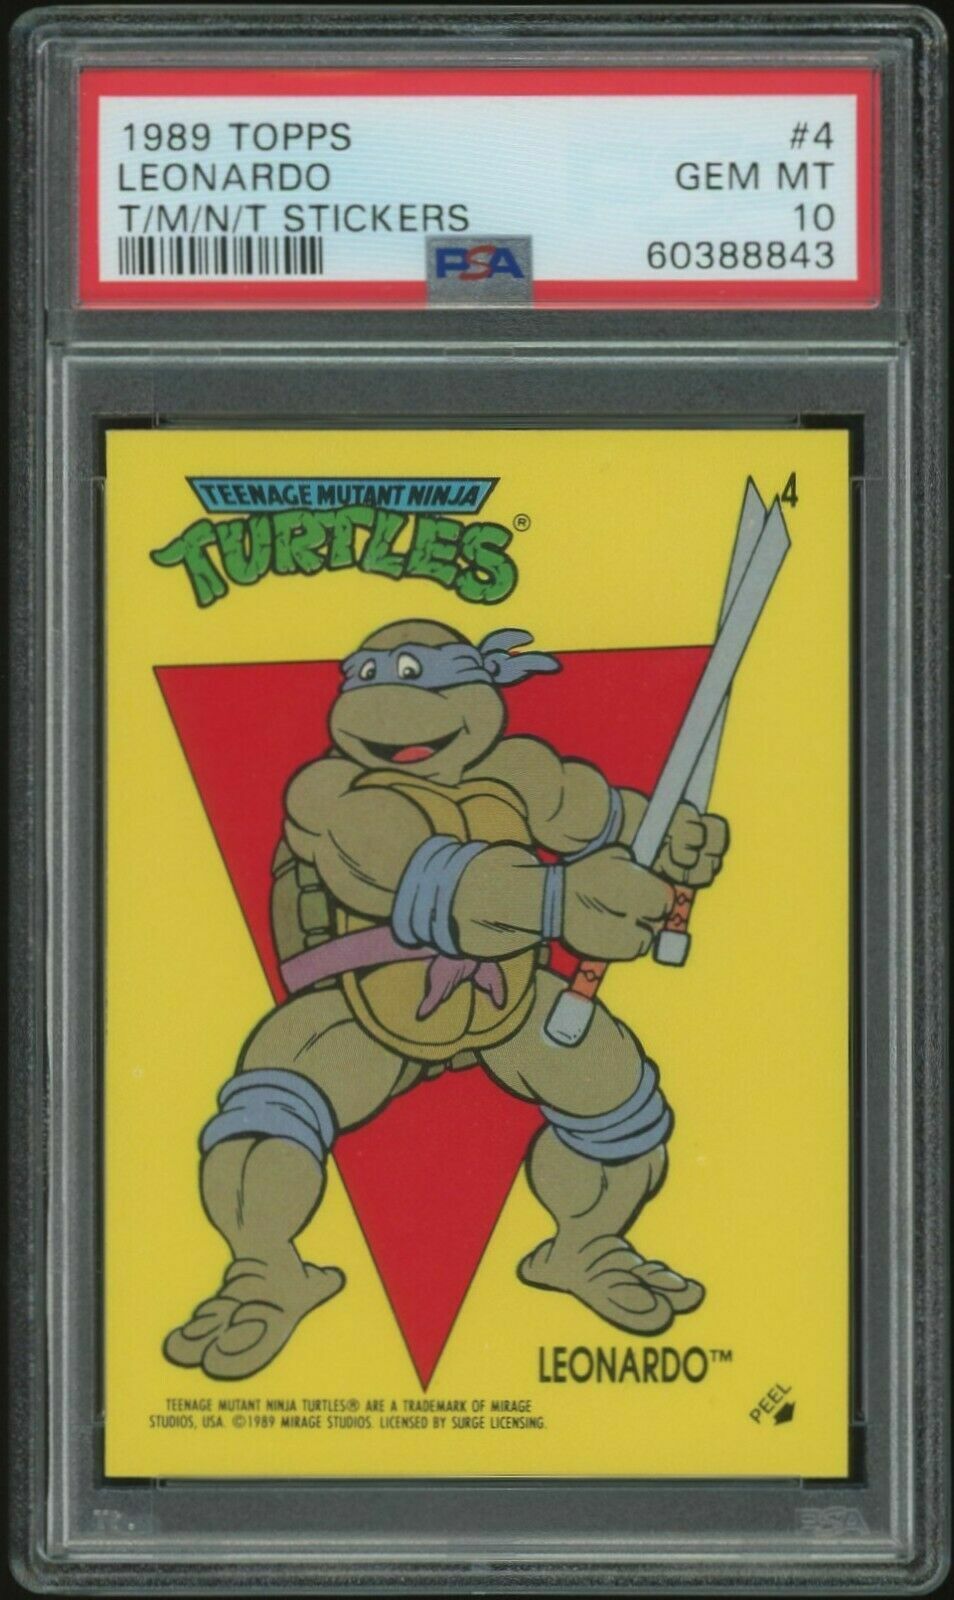 1989 Topps Teenage Mutant Ninja Turtles TMNT Card LEONARDO #4 PSA 10 BEAUTIFUL